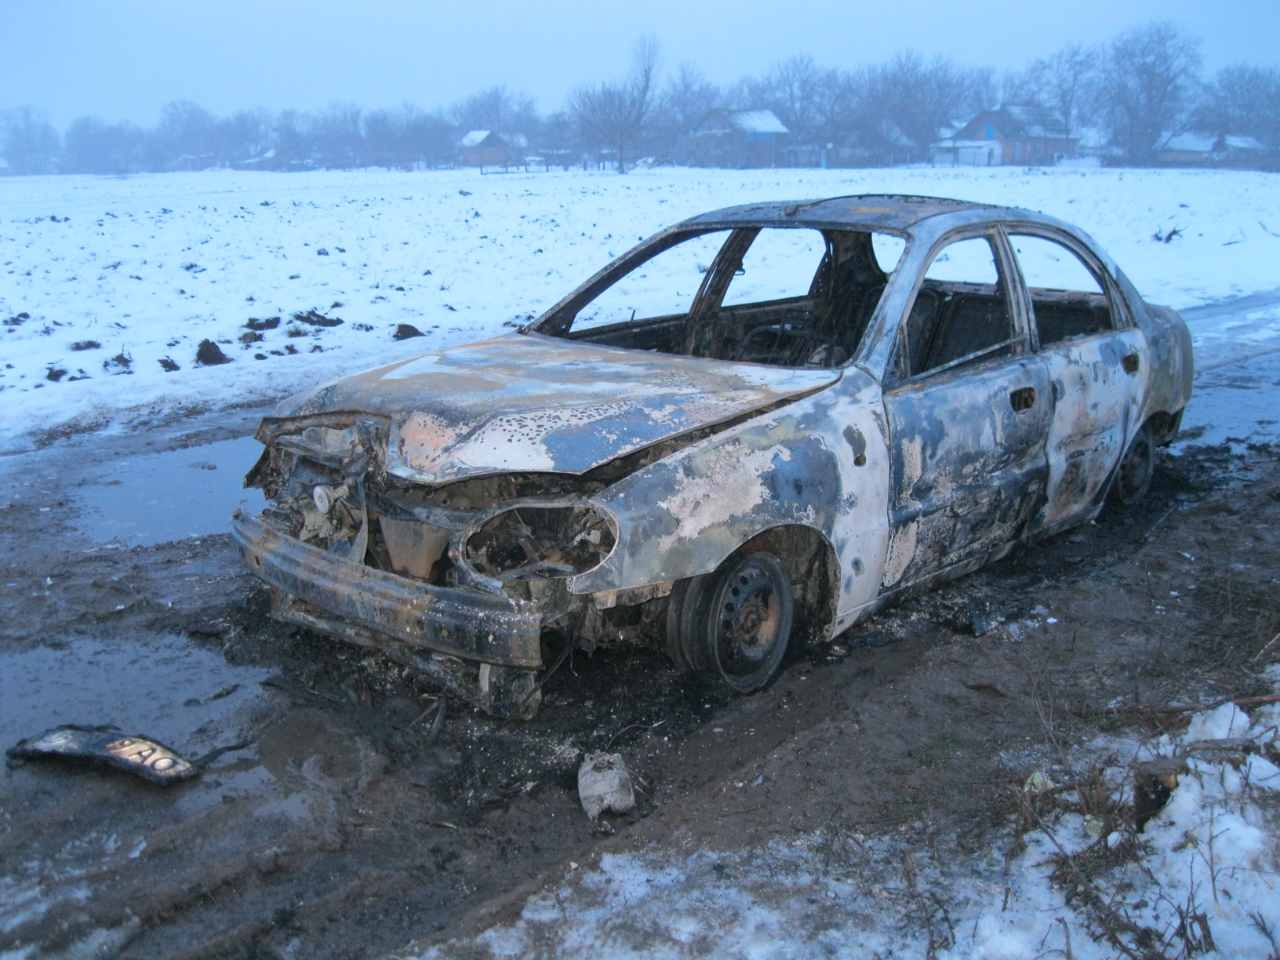 Чому в Мочулці заживо згорів водій у «Daewoo Lanos»?